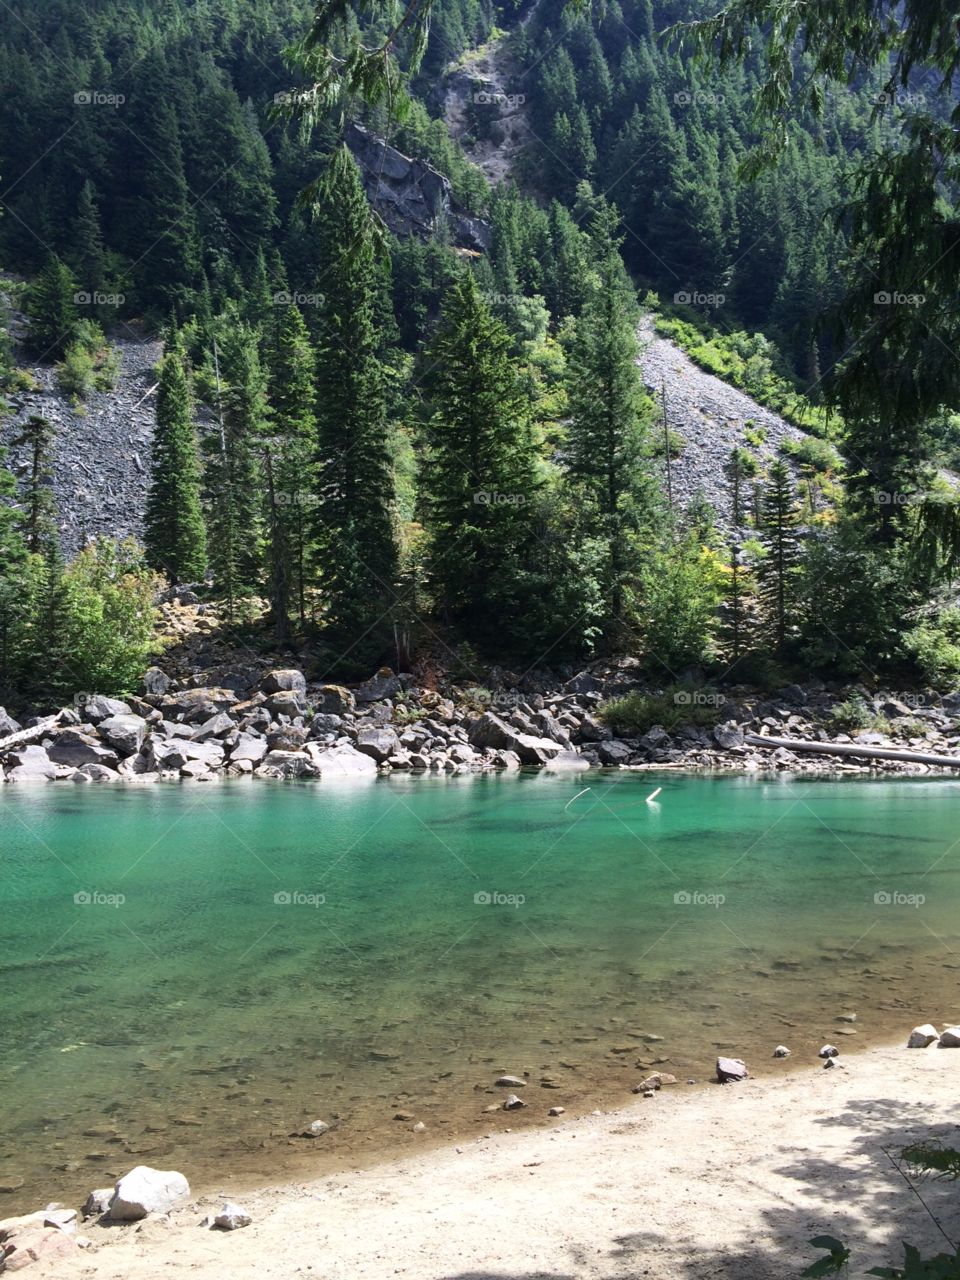 Turquoise lake